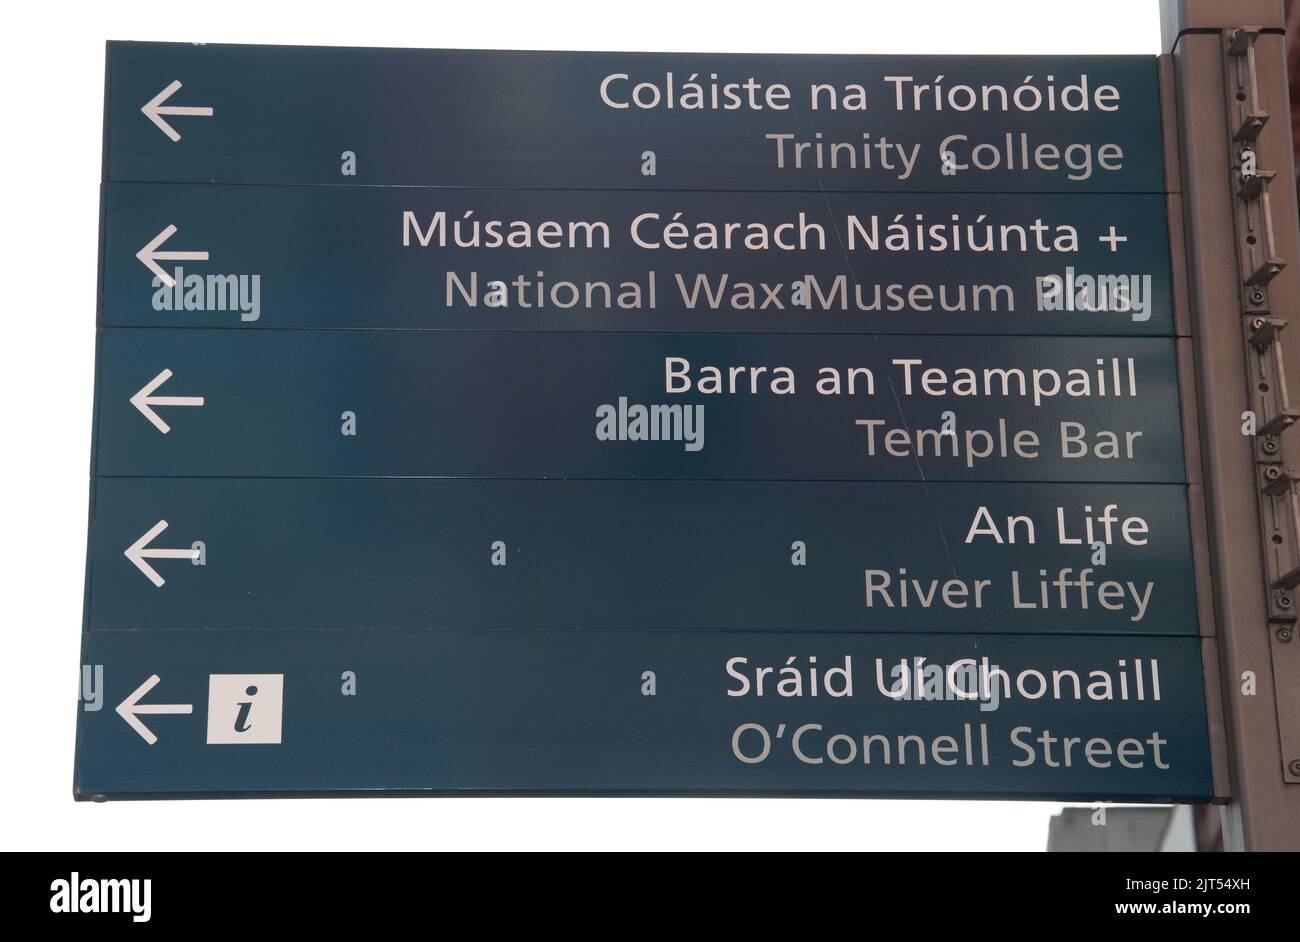 Touristenschild, Dublin, Irland. Zweisprachiges Schild mit Wegbeschreibungen zu einigen der wichtigsten Touristenattraktionen in Dublin. Stockfoto